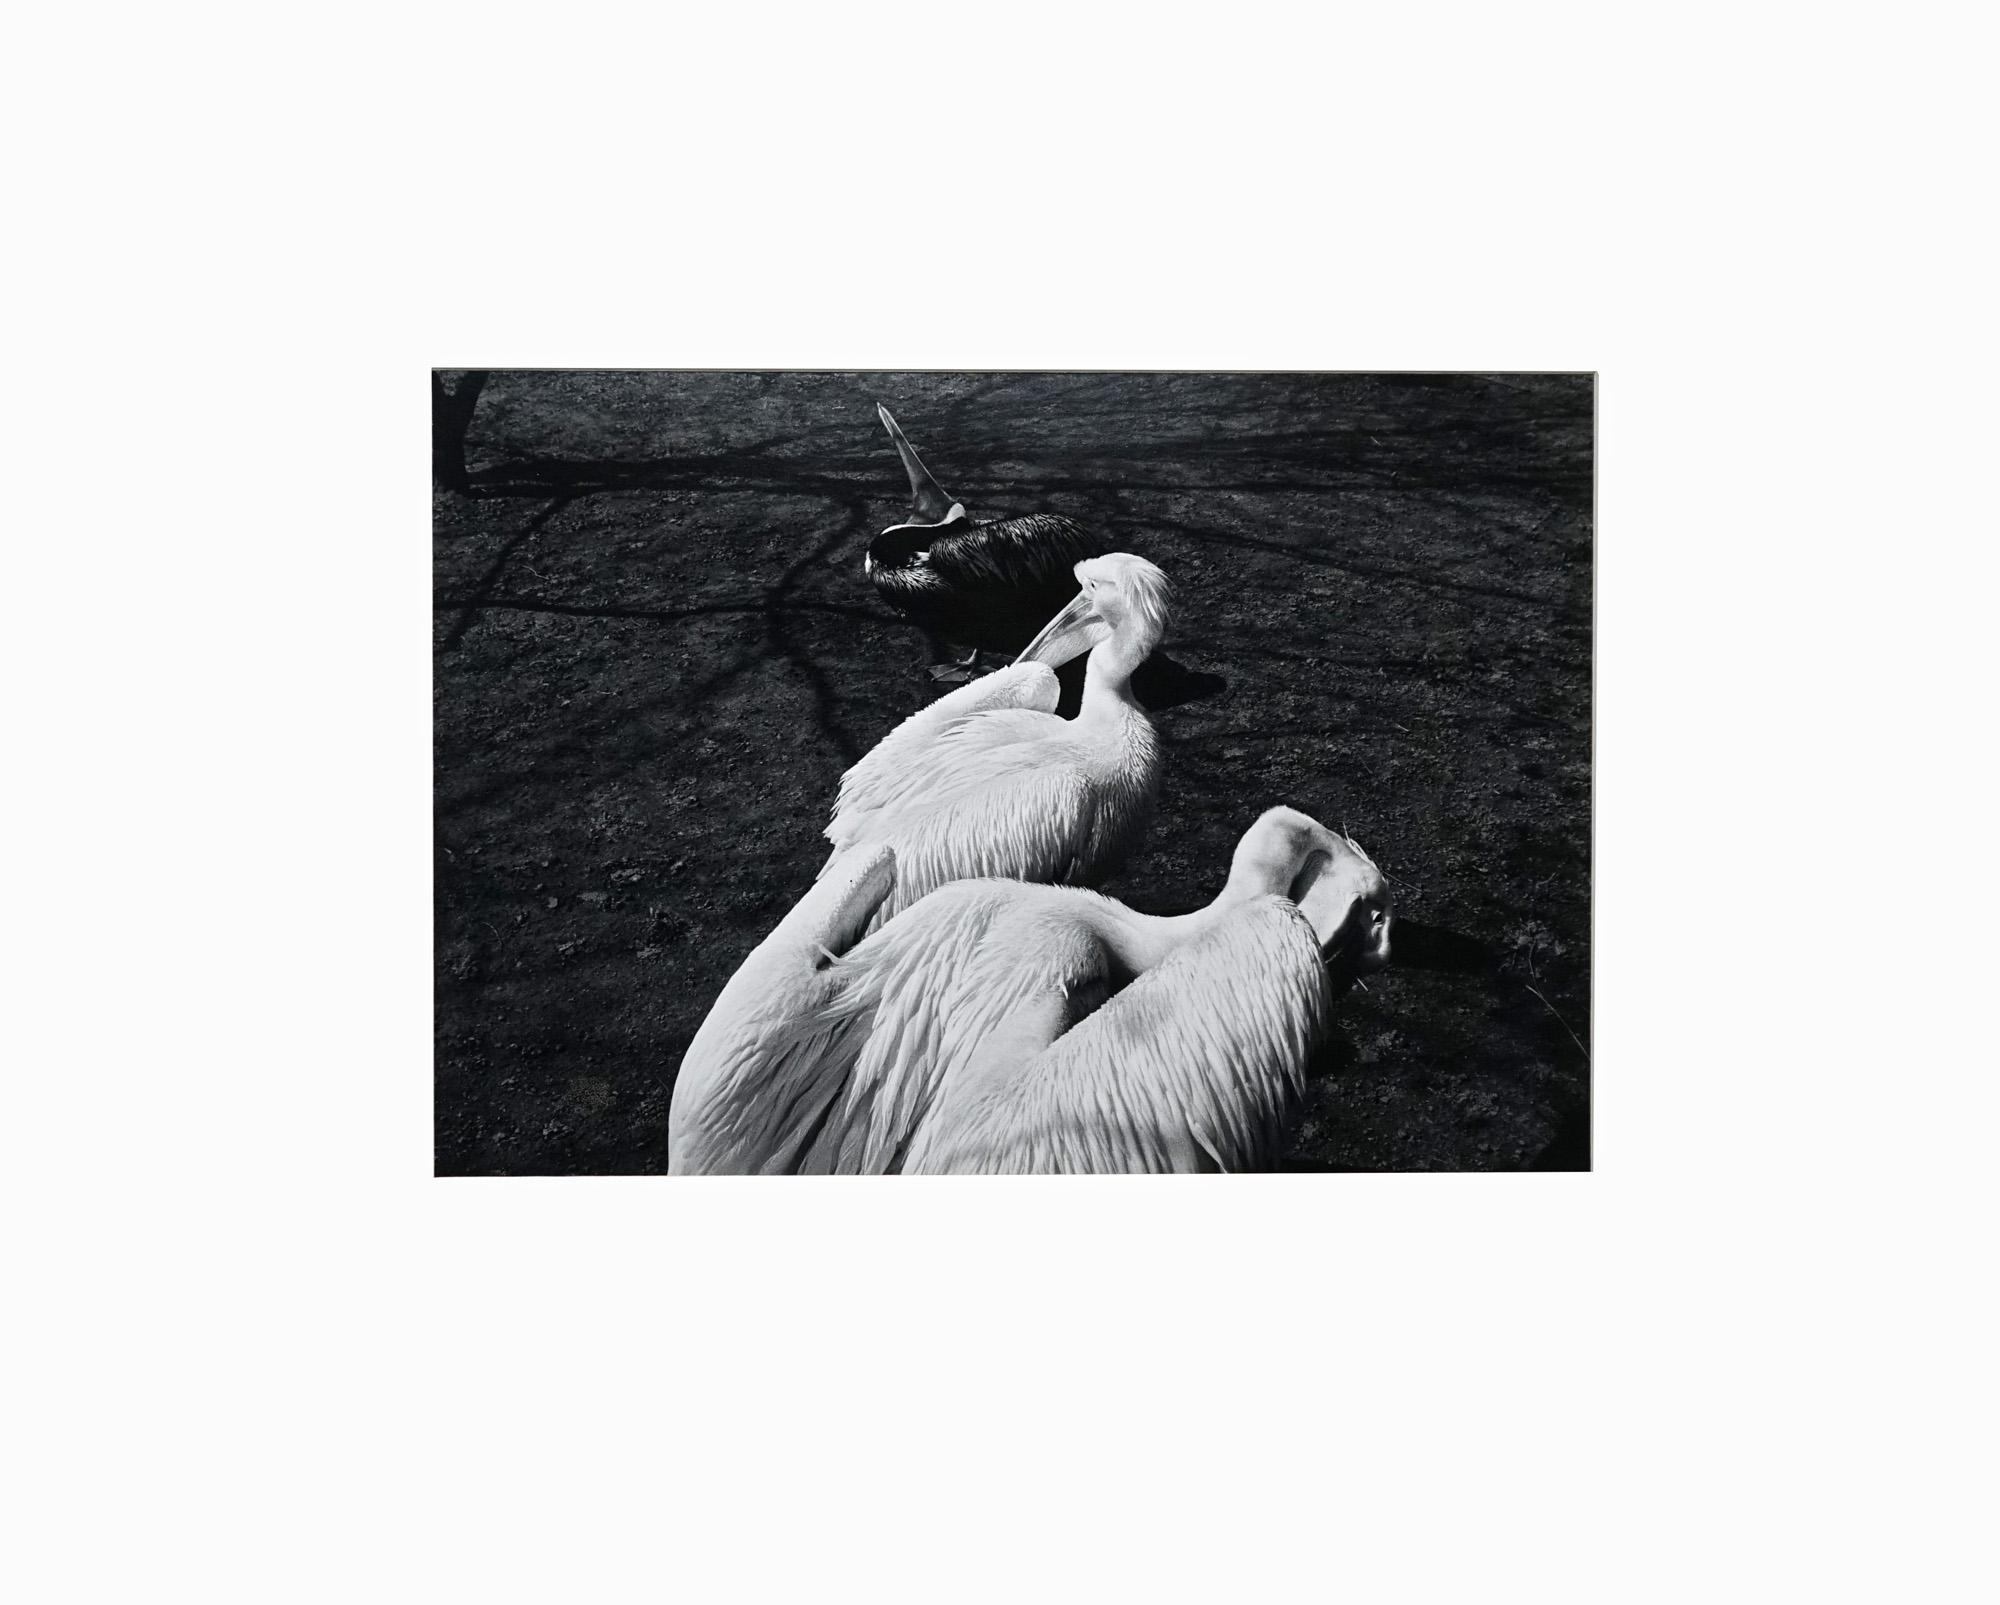 Parc Zoologique - Coffret Prestige # 3 - 1980, Minimalist Black and White Photog - Noir Abstract Photograph par Jörg Krichbaum